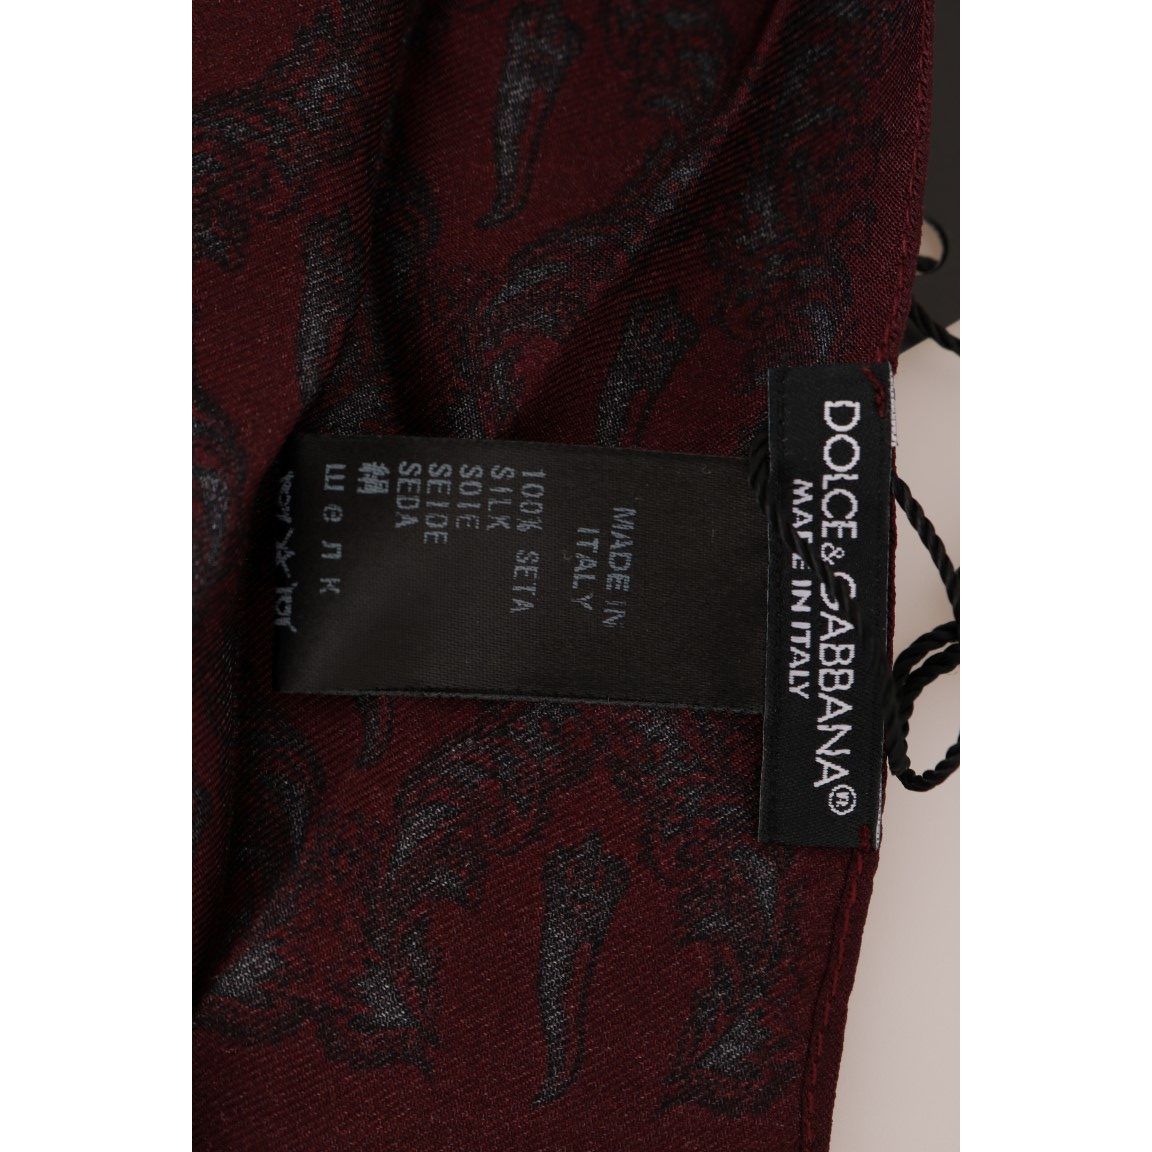 Dolce & Gabbana Silk Bordeaux Crown Chili Print Mens Scarf bordeaux-silk-crown-chili-scarf Silk Scarves 517984-bordeaux-silk-crown-chili-scarf-5.jpg